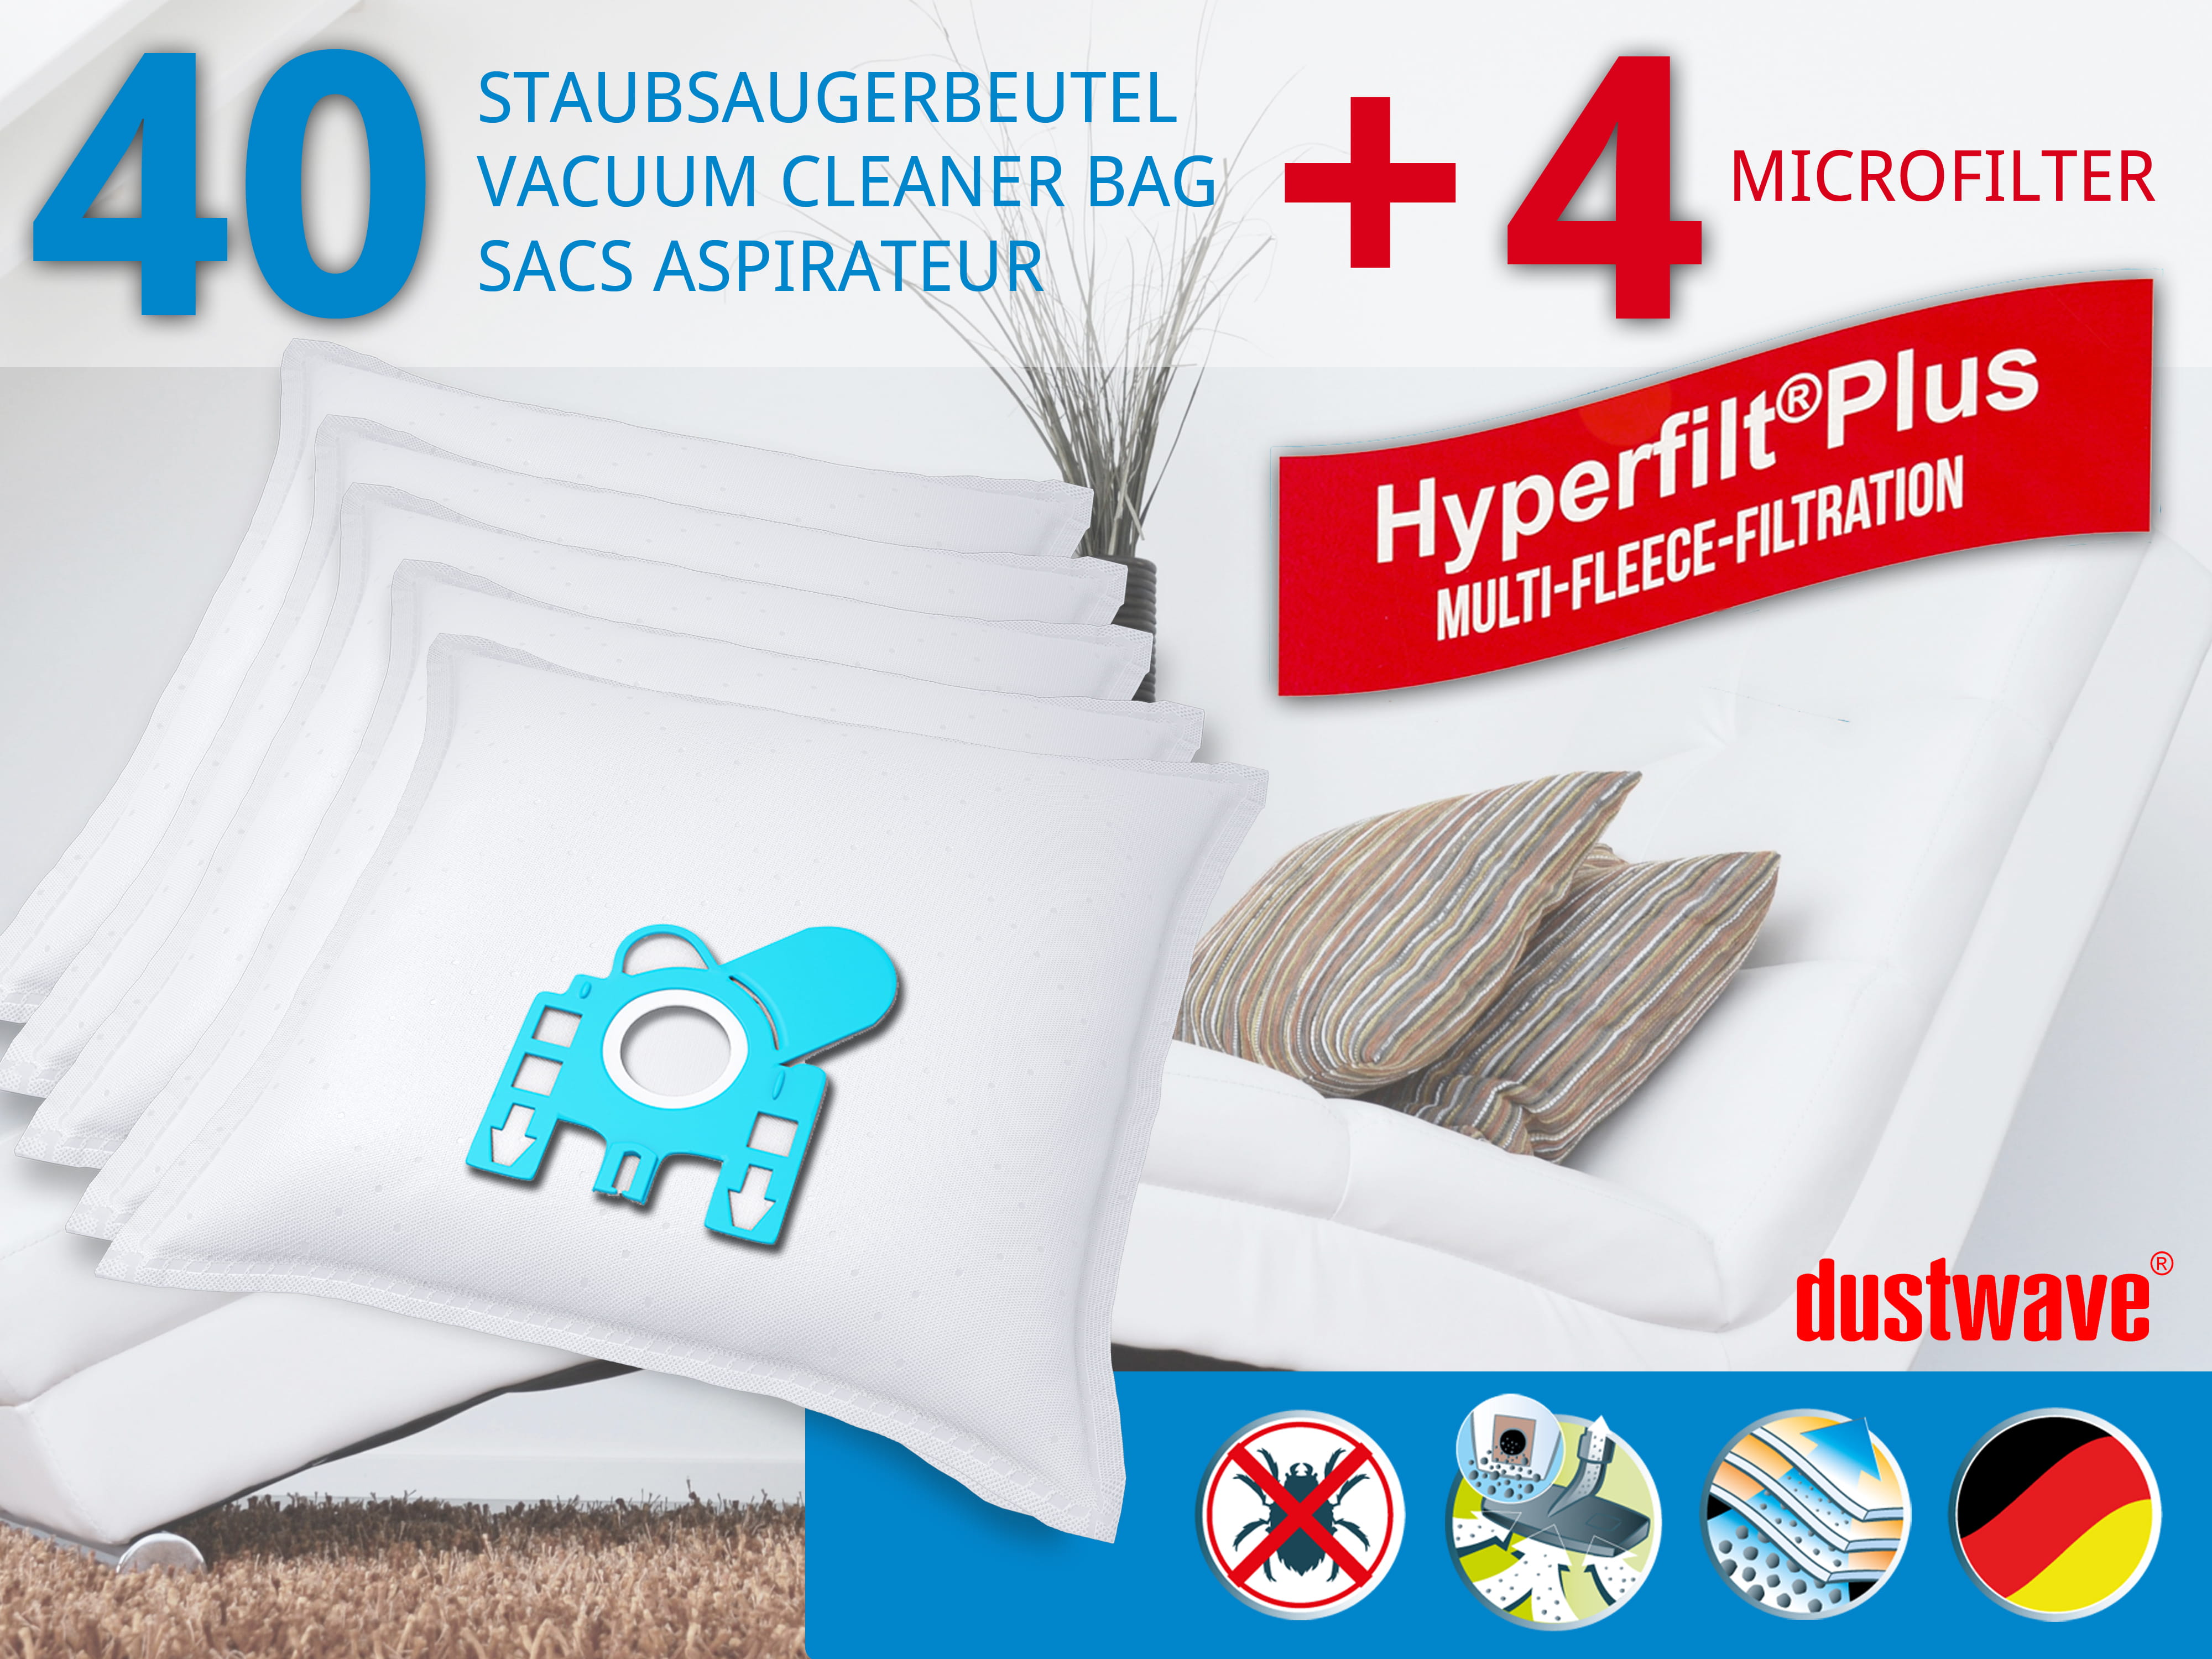 Dustwave® 40 Staubsaugerbeutel für Hoover 39000439 - hocheffizient, mehrlagiges Mikrovlies mit Hygieneverschluss - Made in Germany